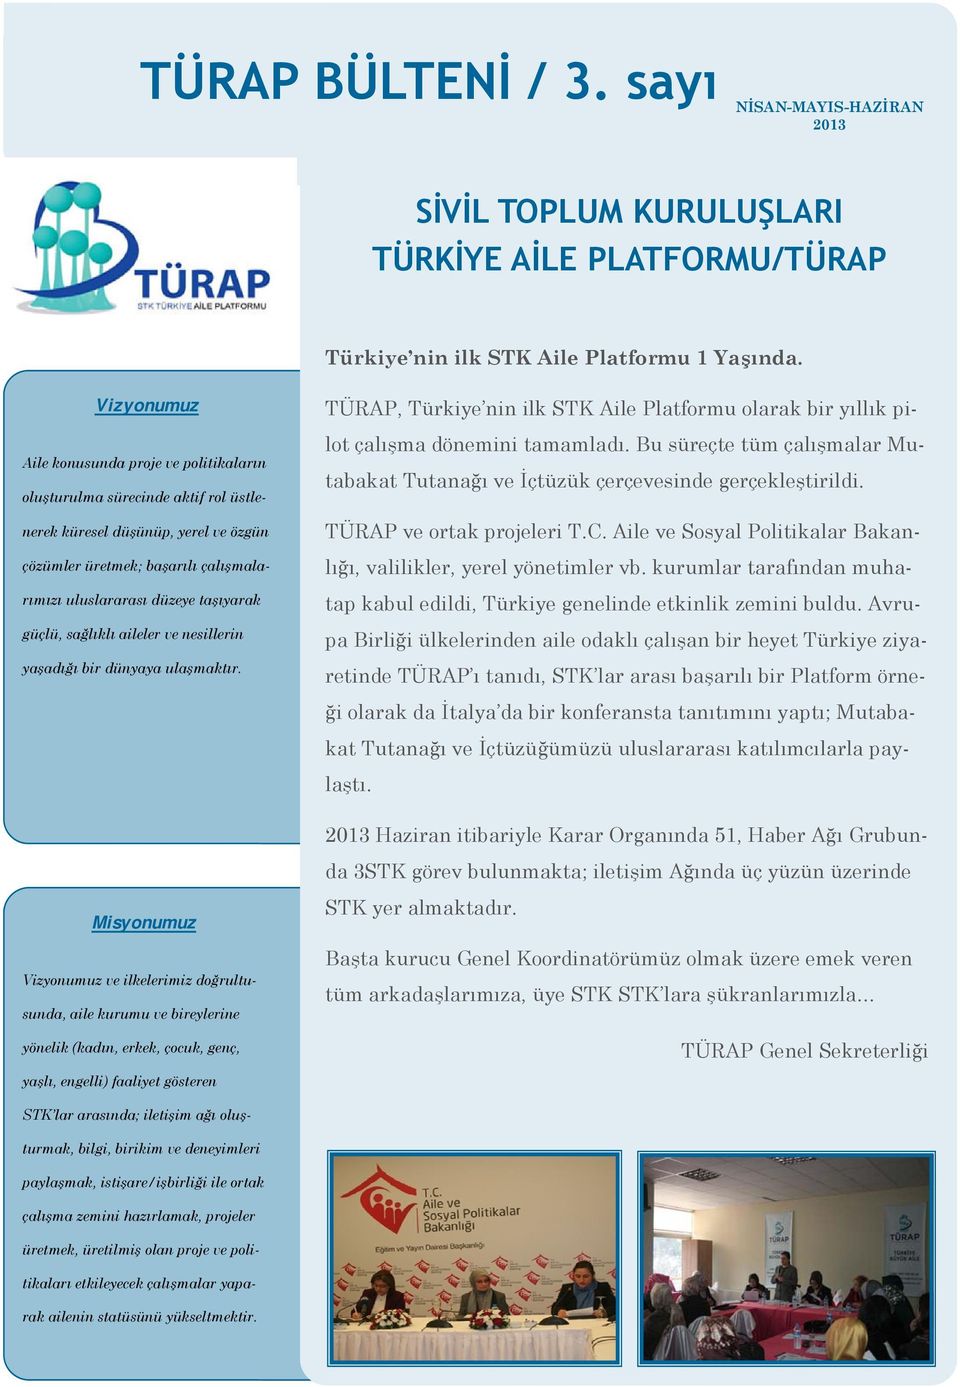 güçlü, sağlıklı aileler ve nesillerin yaşadığı bir dünyaya ulaşmaktır. TÜRAP, Türkiye nin ilk STK Aile Platformu olarak bir yıllık pilot çalışma dönemini tamamladı.